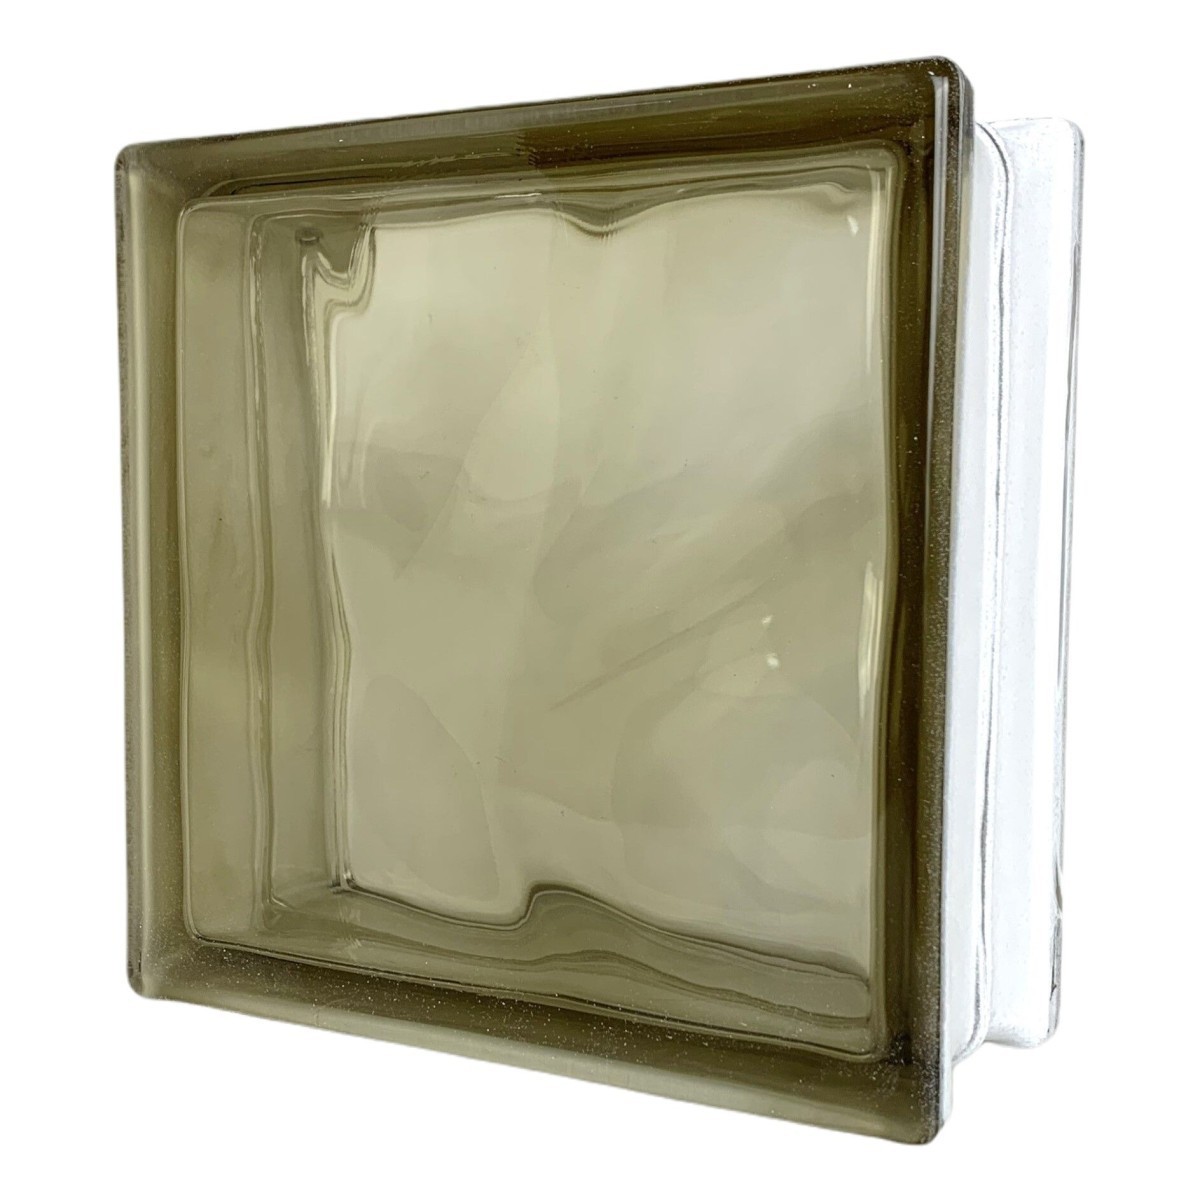 6 шт. комплект бесплатная доставка стекло блок мир . знаменитый . бренд товар толщина 80mm Brown цвет .gb5980-6p